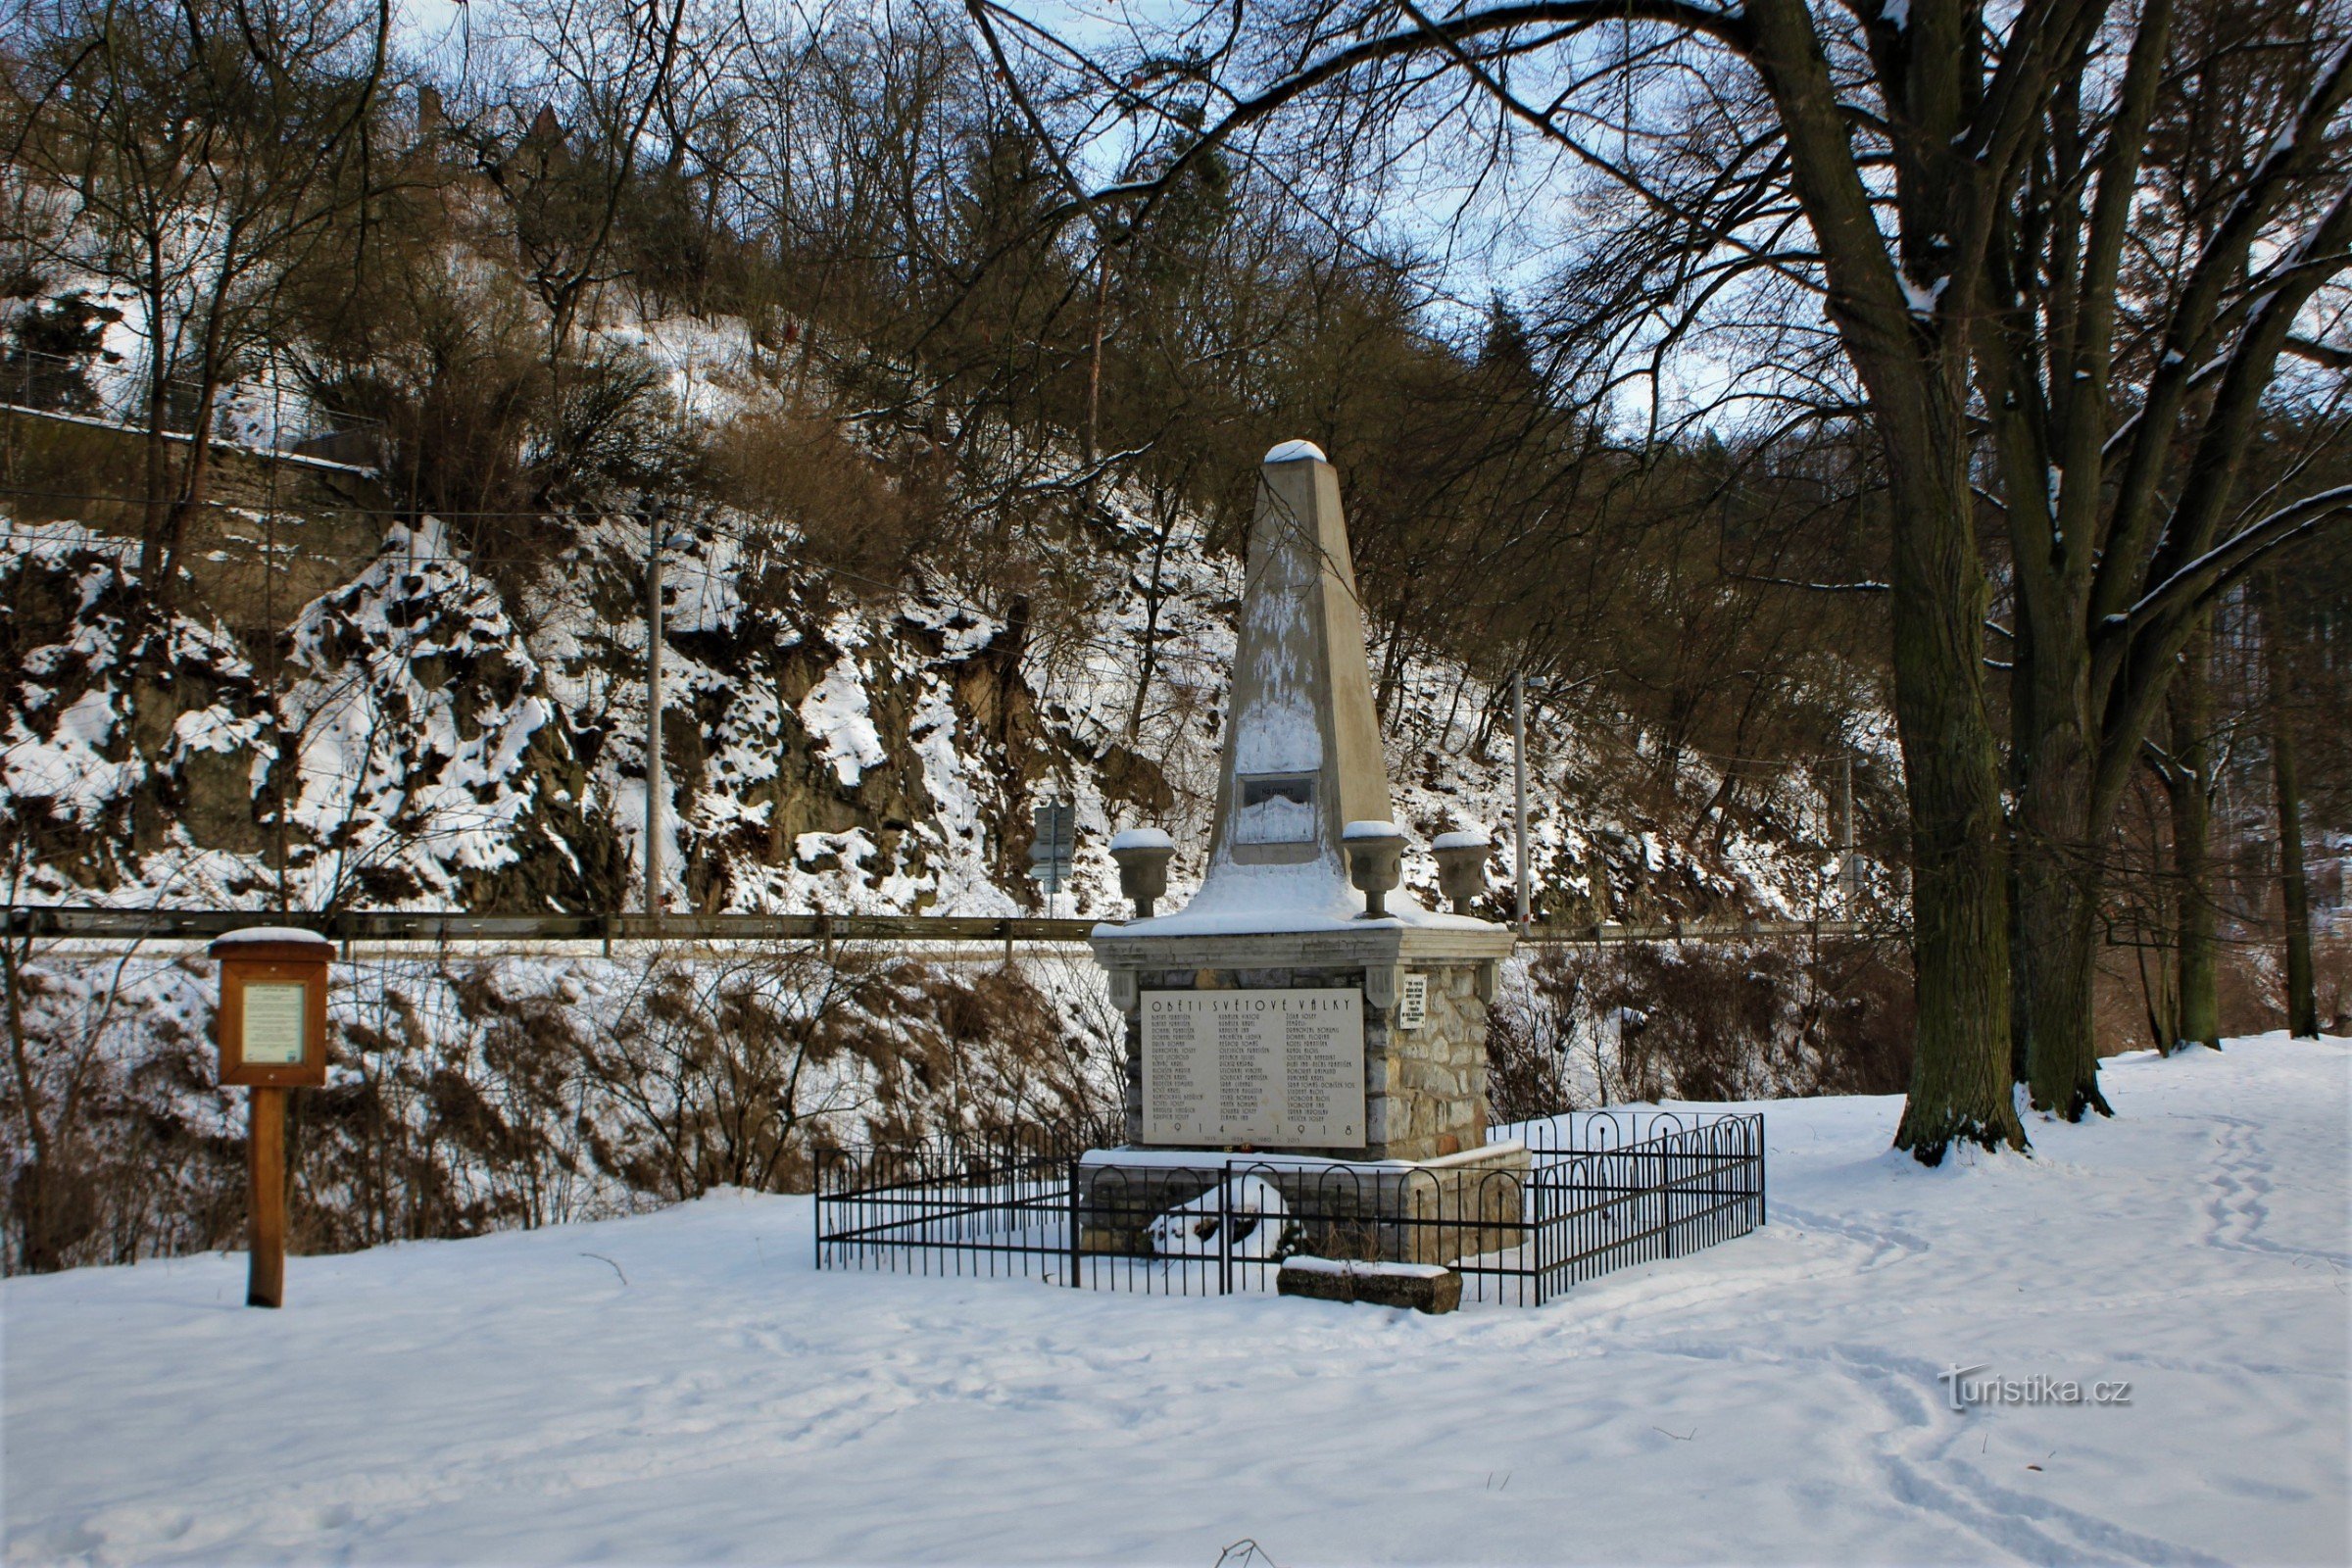 Остров с мемориалом погибшим в Первой мировой войне